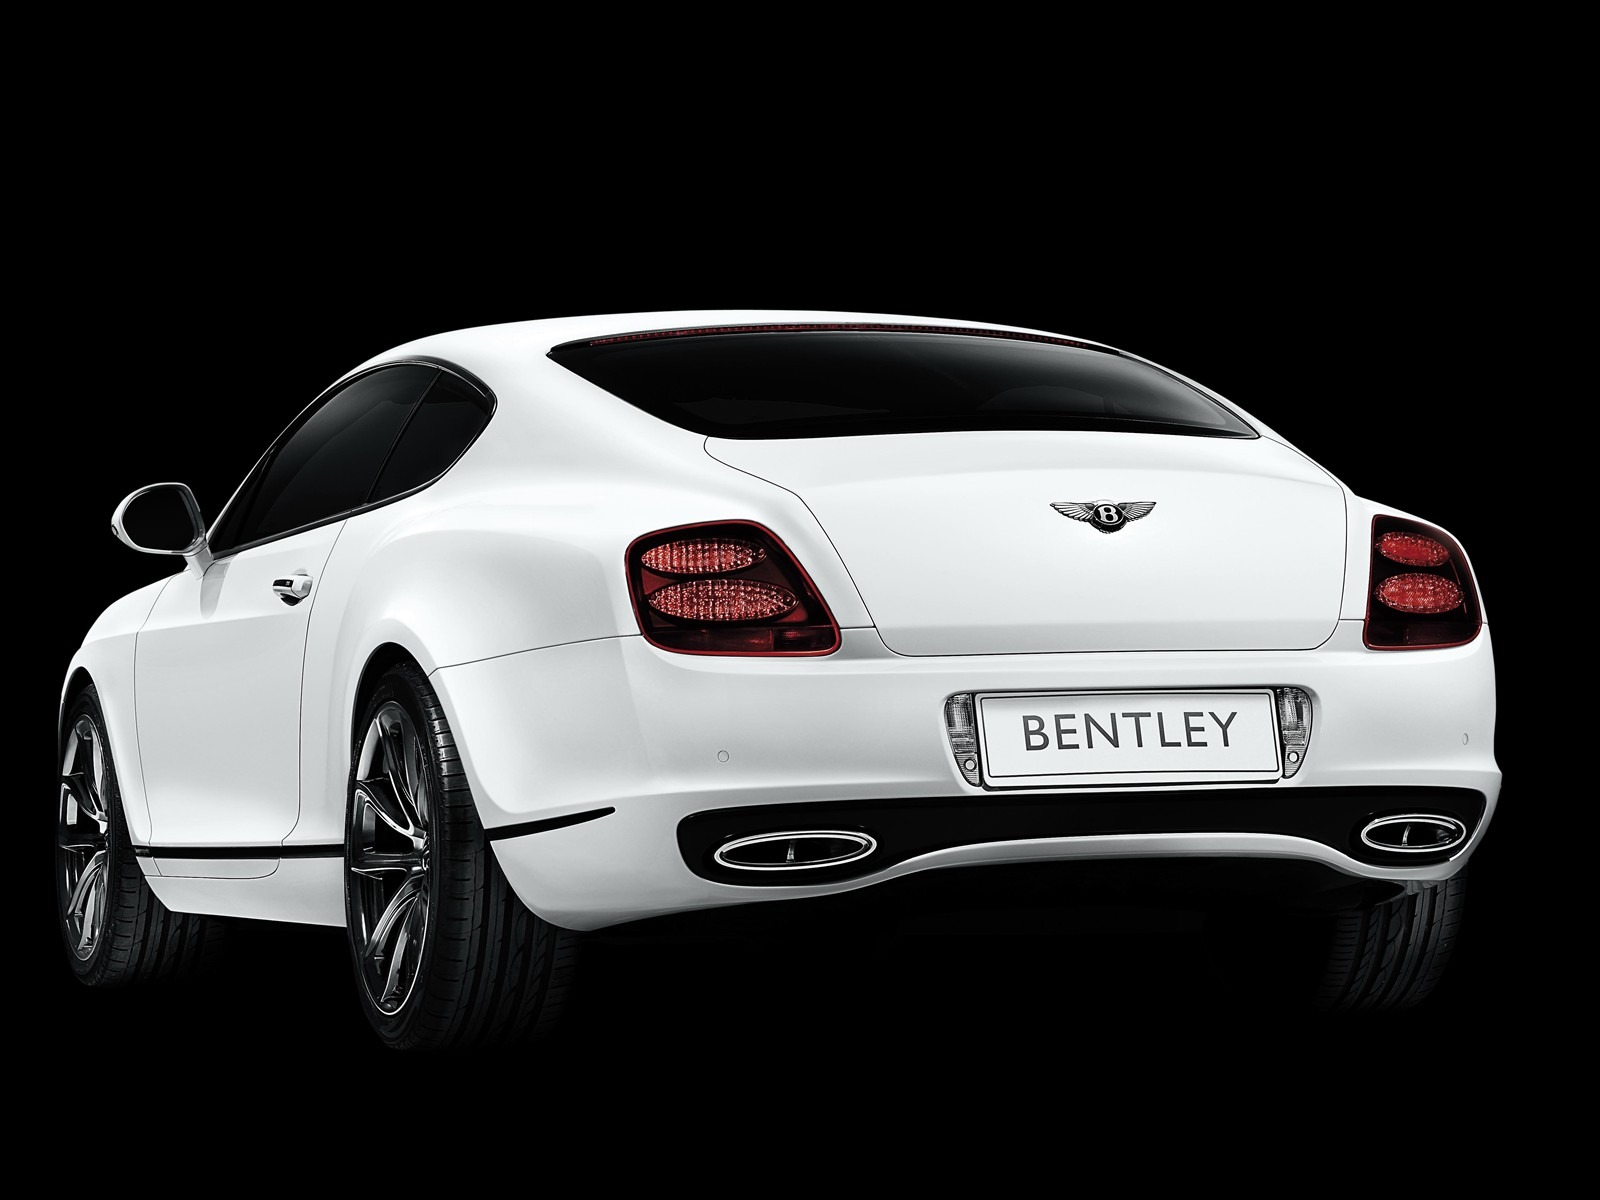 Bentley 宾利 壁纸专辑(一)3 - 1600x1200